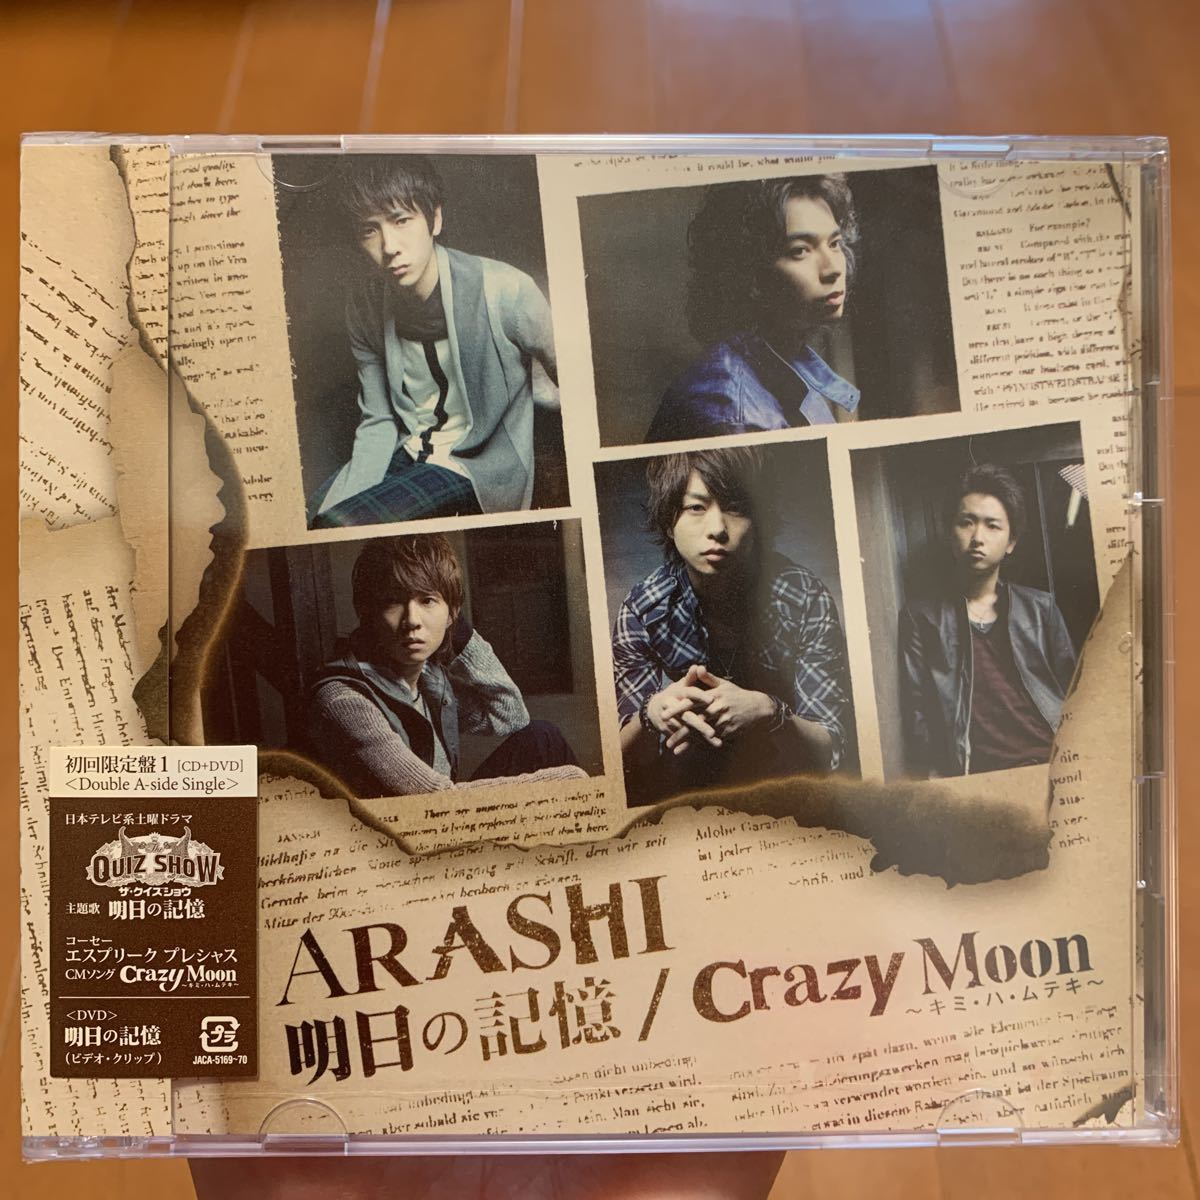 ARASHI 嵐 明日の記憶/Crazy Moon 初回限定盤1 CD+DVD 明日の記憶 ビデオ・クリップ付き 新品未開封 ザ・クイズショウ主題歌